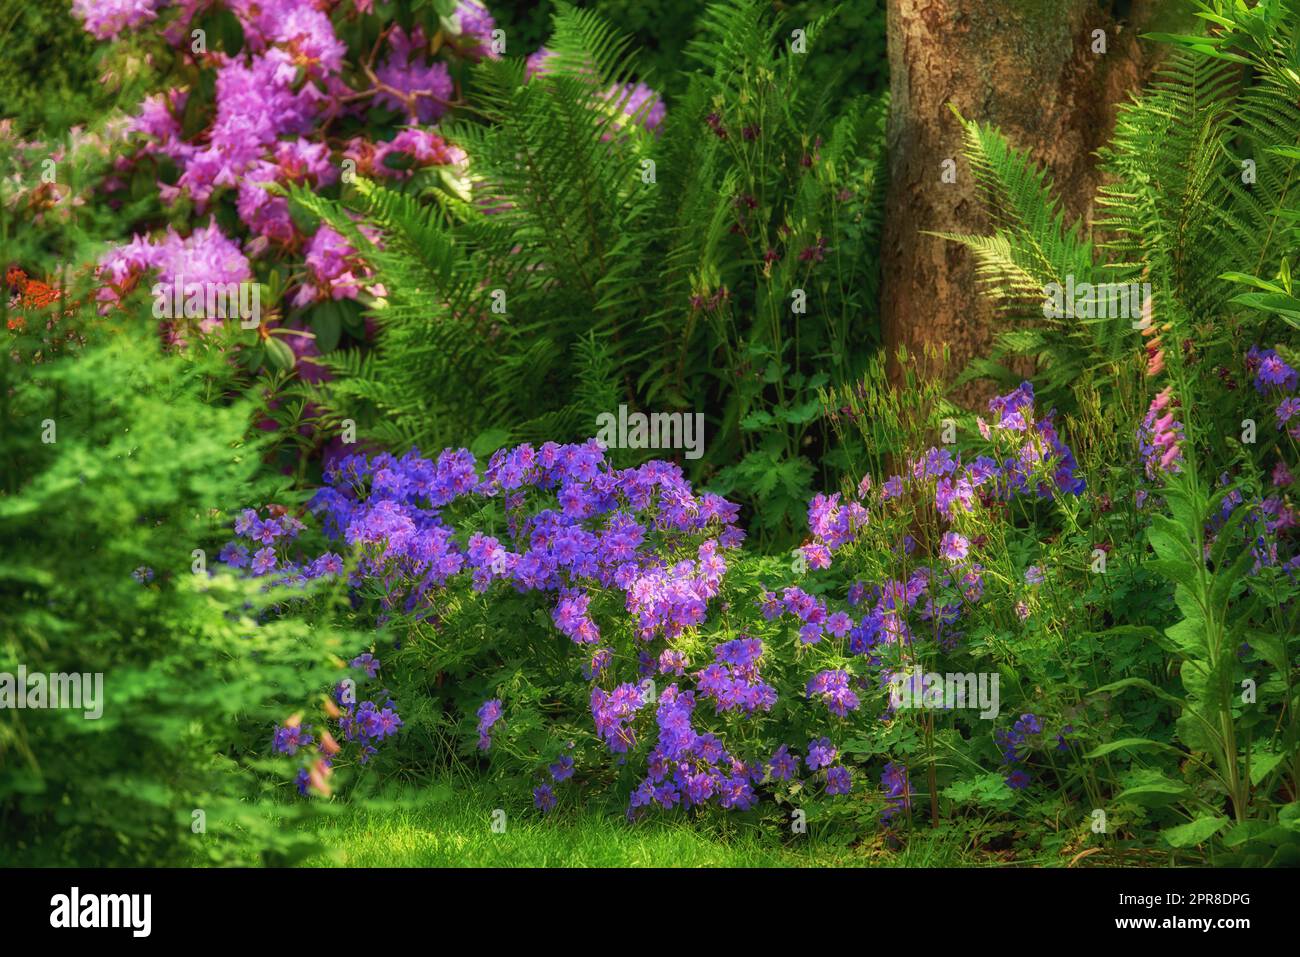 Lebhafte Clematis und rosa Säulenblumen wachsen in einem landschaftlich schönen, üppigen privaten Garten. Botanische Pflanzen, Büsche, Sträucher, Farne, Flora und Bäume in einem Hinterhof. Friedlich, friedlich und friedlich Stockfoto